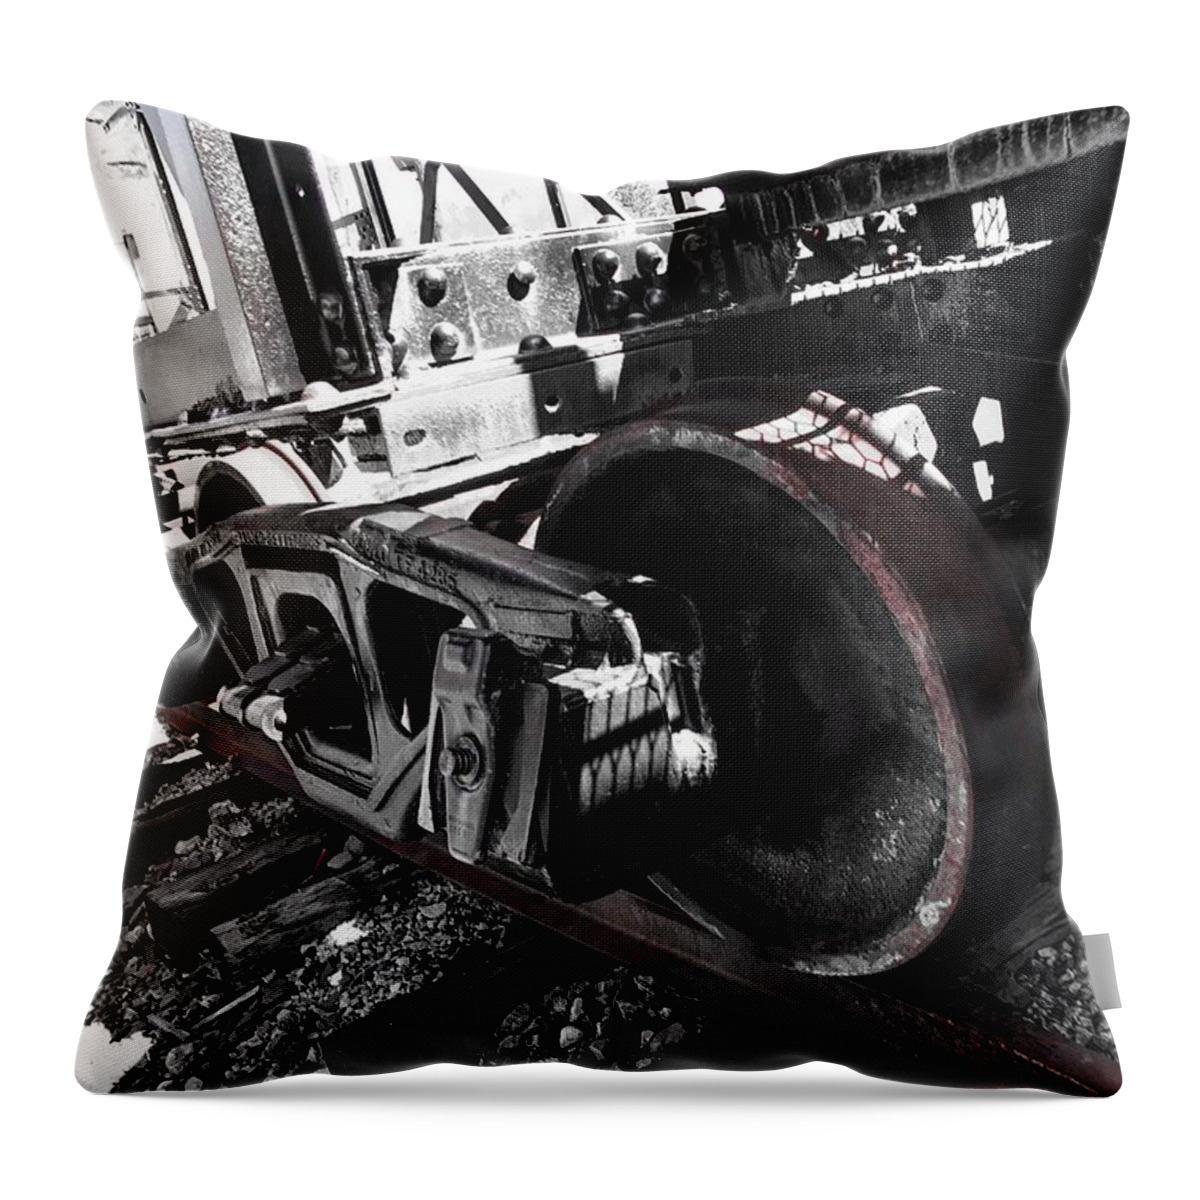 Train Throw Pillow featuring the photograph Train Wheels by Jason Nicholas